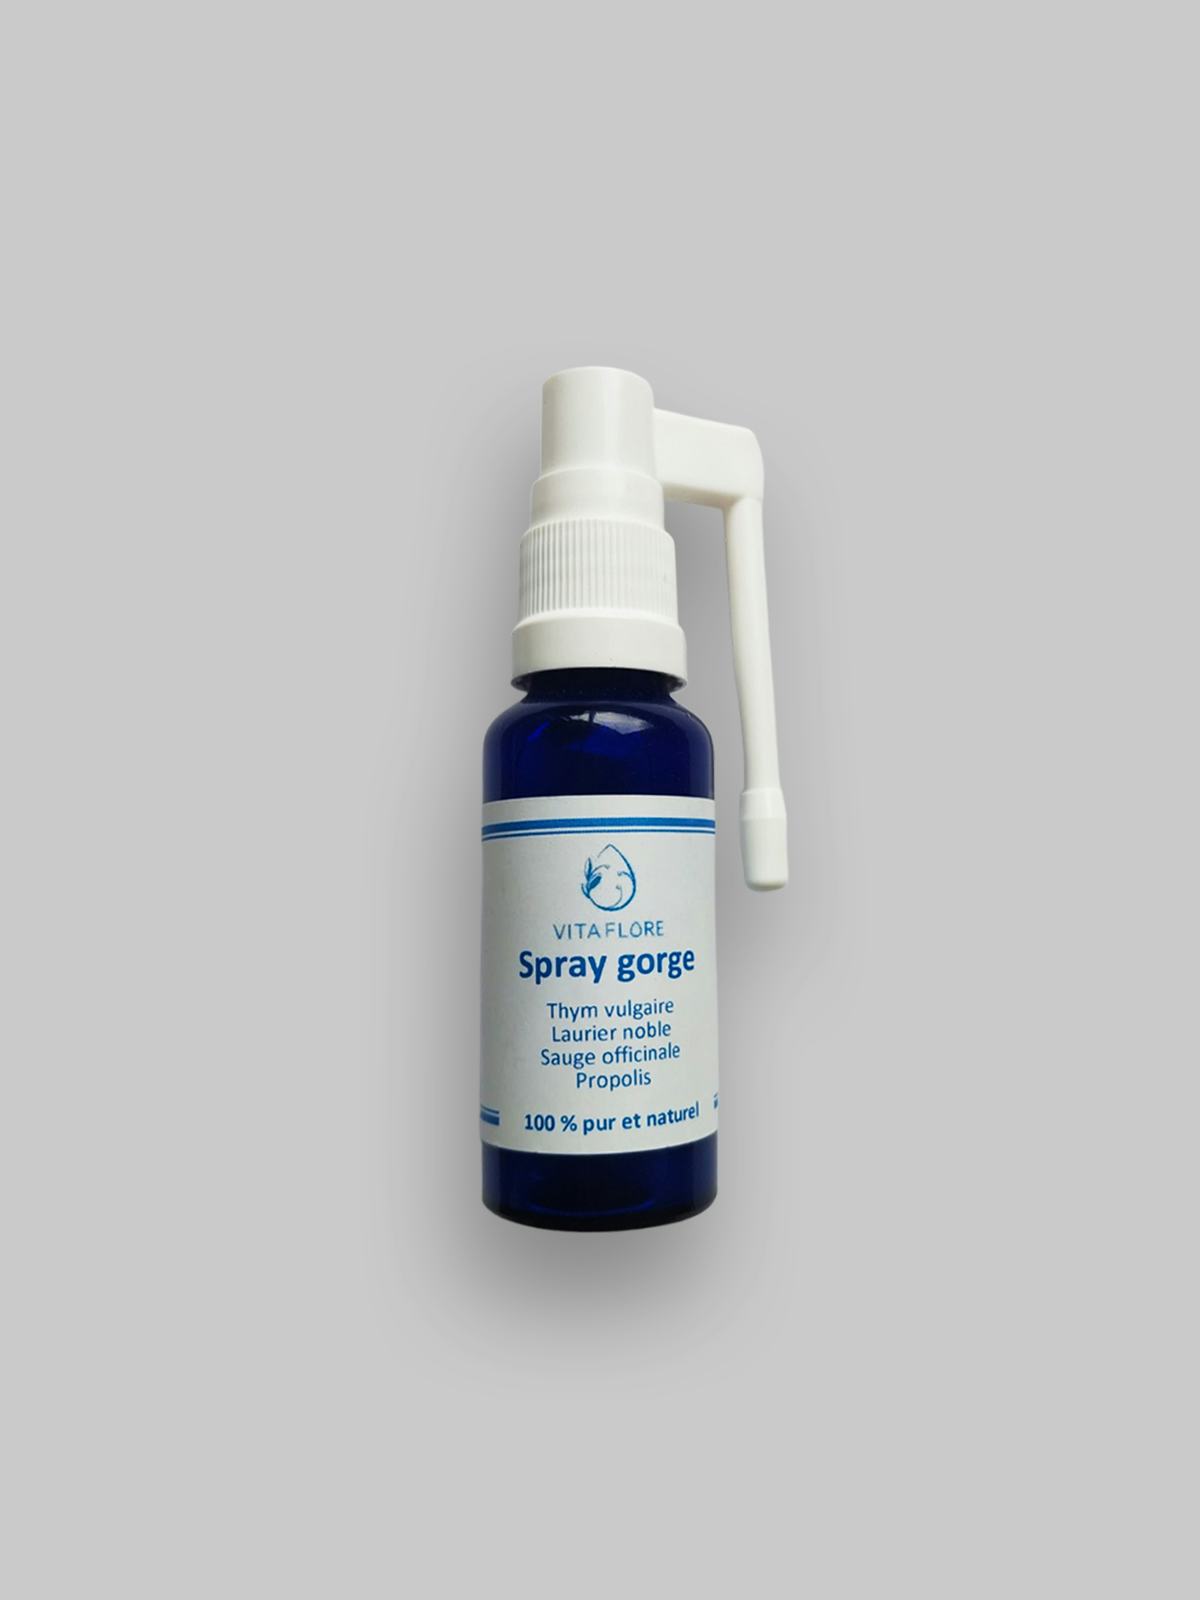 Spray per la gola, prodotto artigianale per la vendita diretta in Svizzera